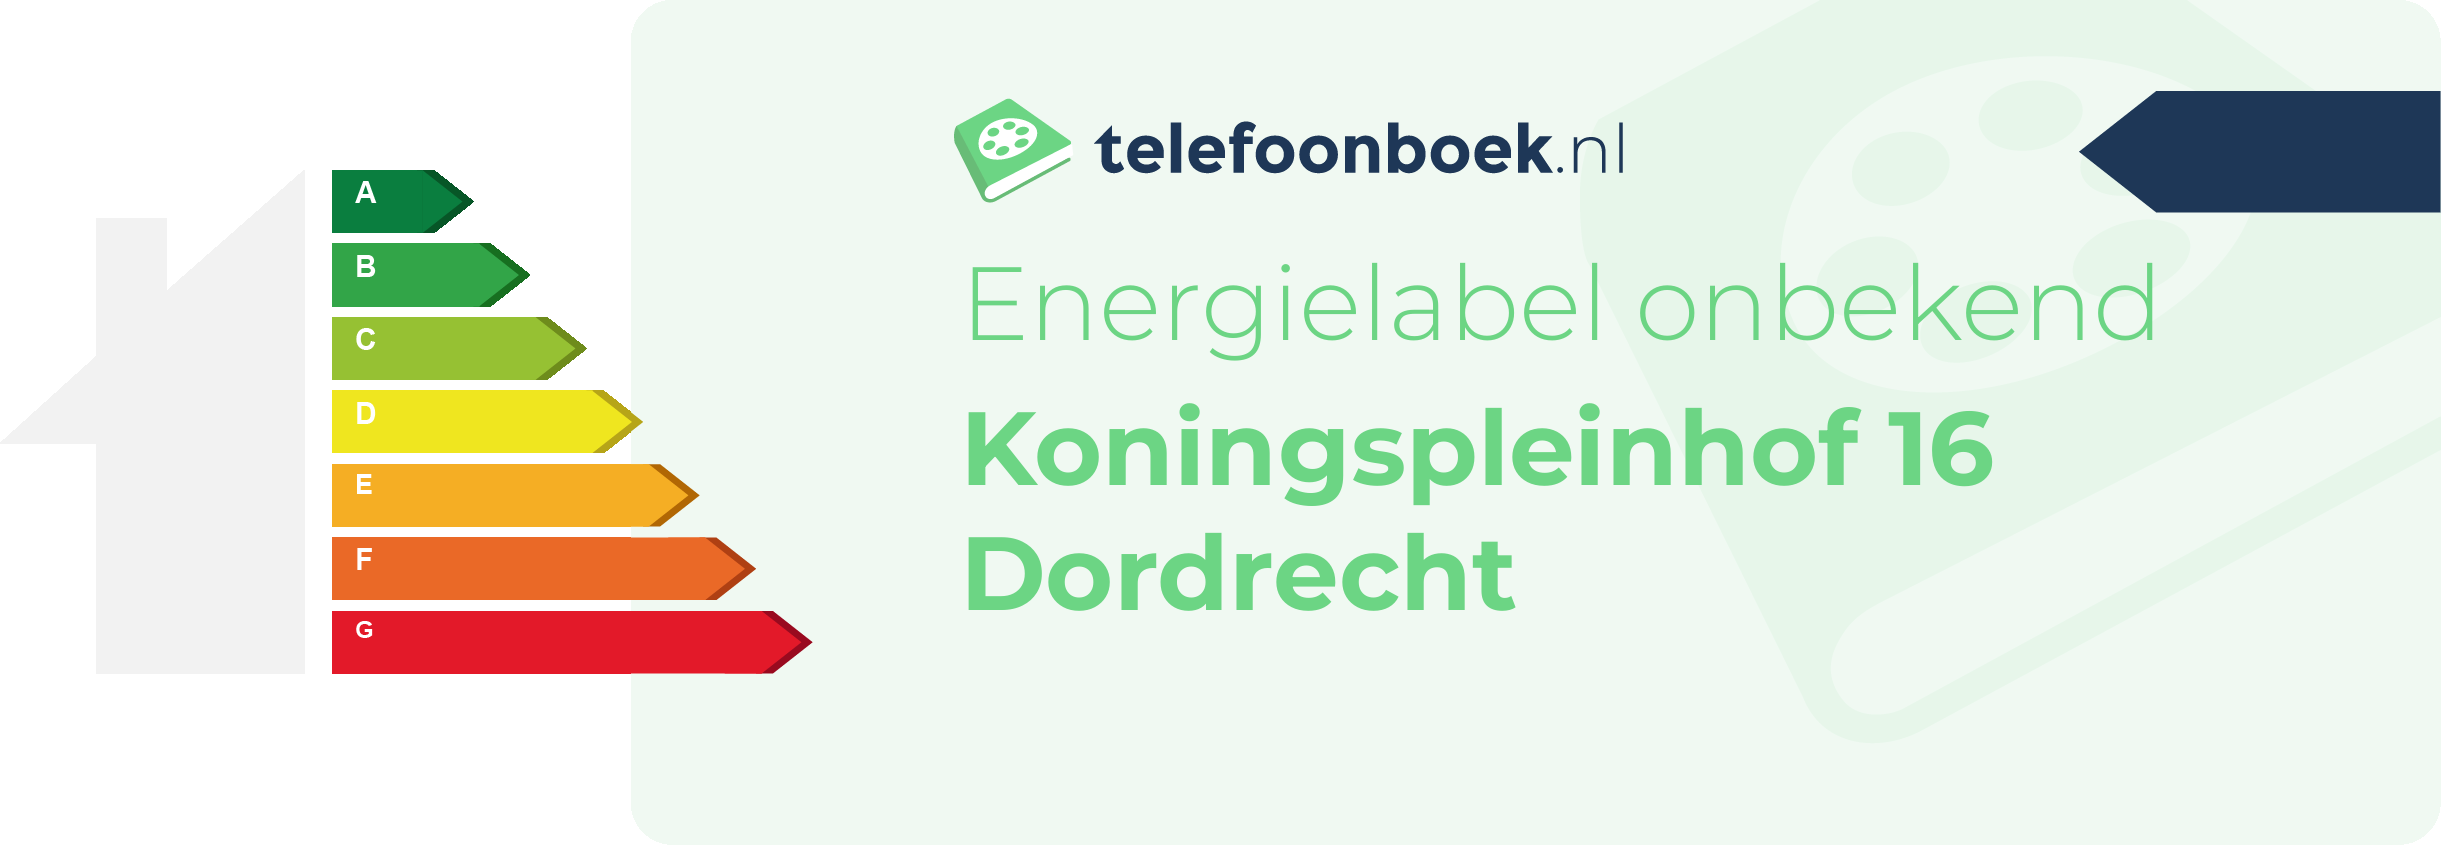 Energielabel Koningspleinhof 16 Dordrecht